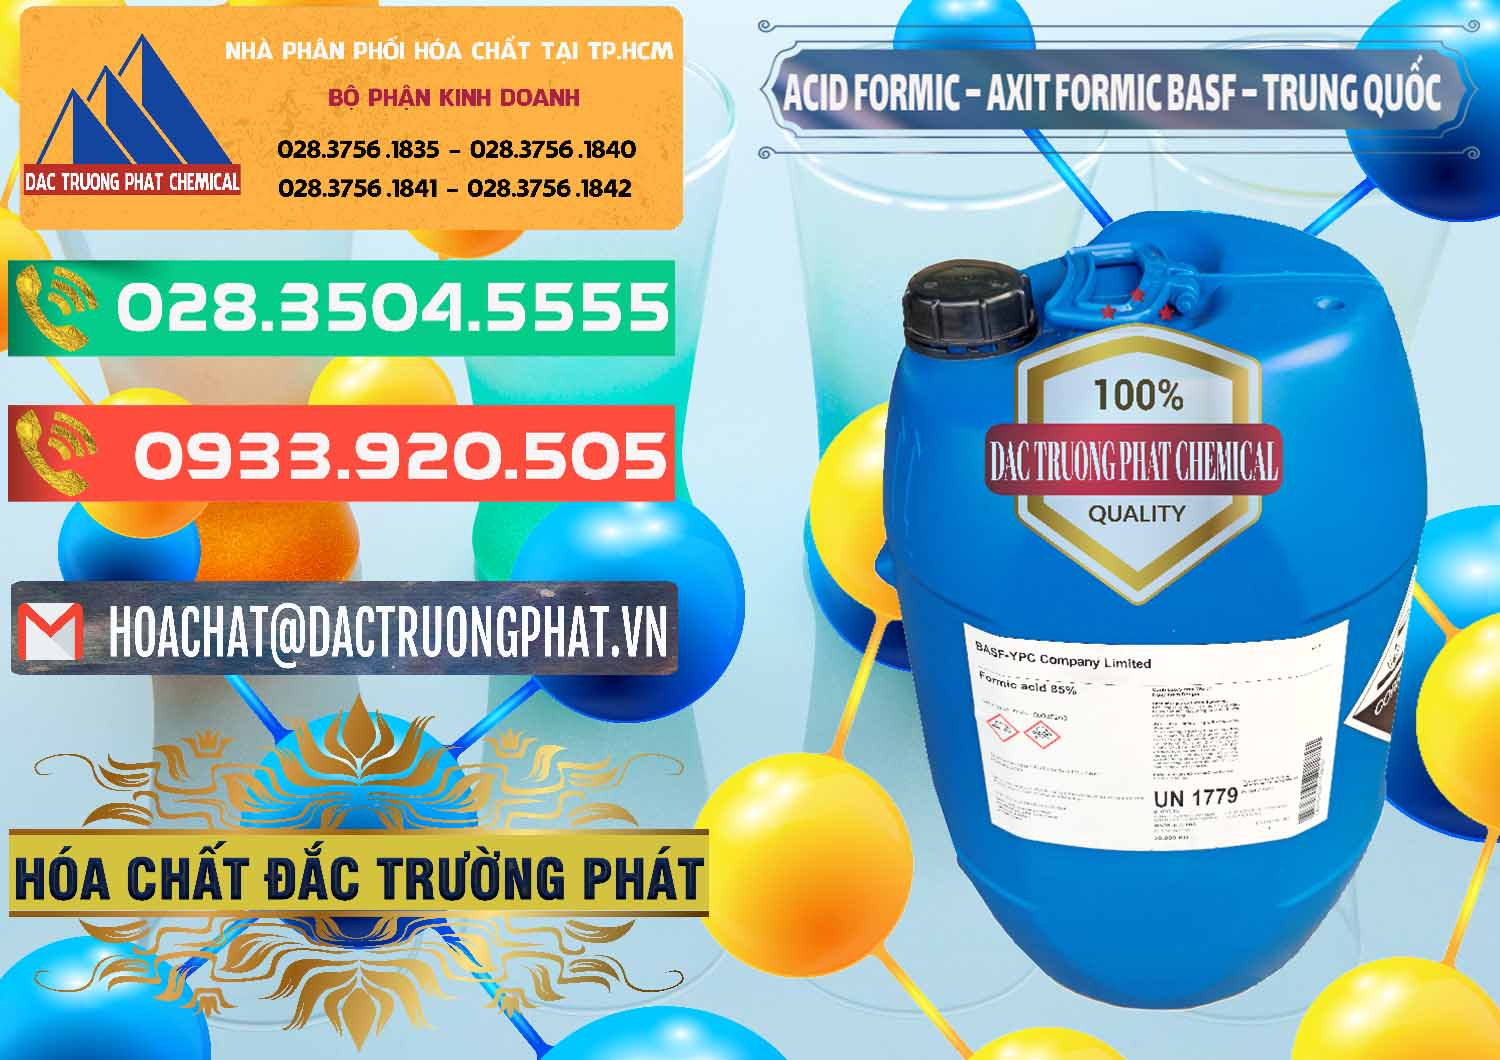 Cty chuyên bán & cung ứng Acid Formic - Axit Formic BASF Trung Quốc China - 0025 - Cty chuyên phân phối và nhập khẩu hóa chất tại TP.HCM - congtyhoachat.com.vn